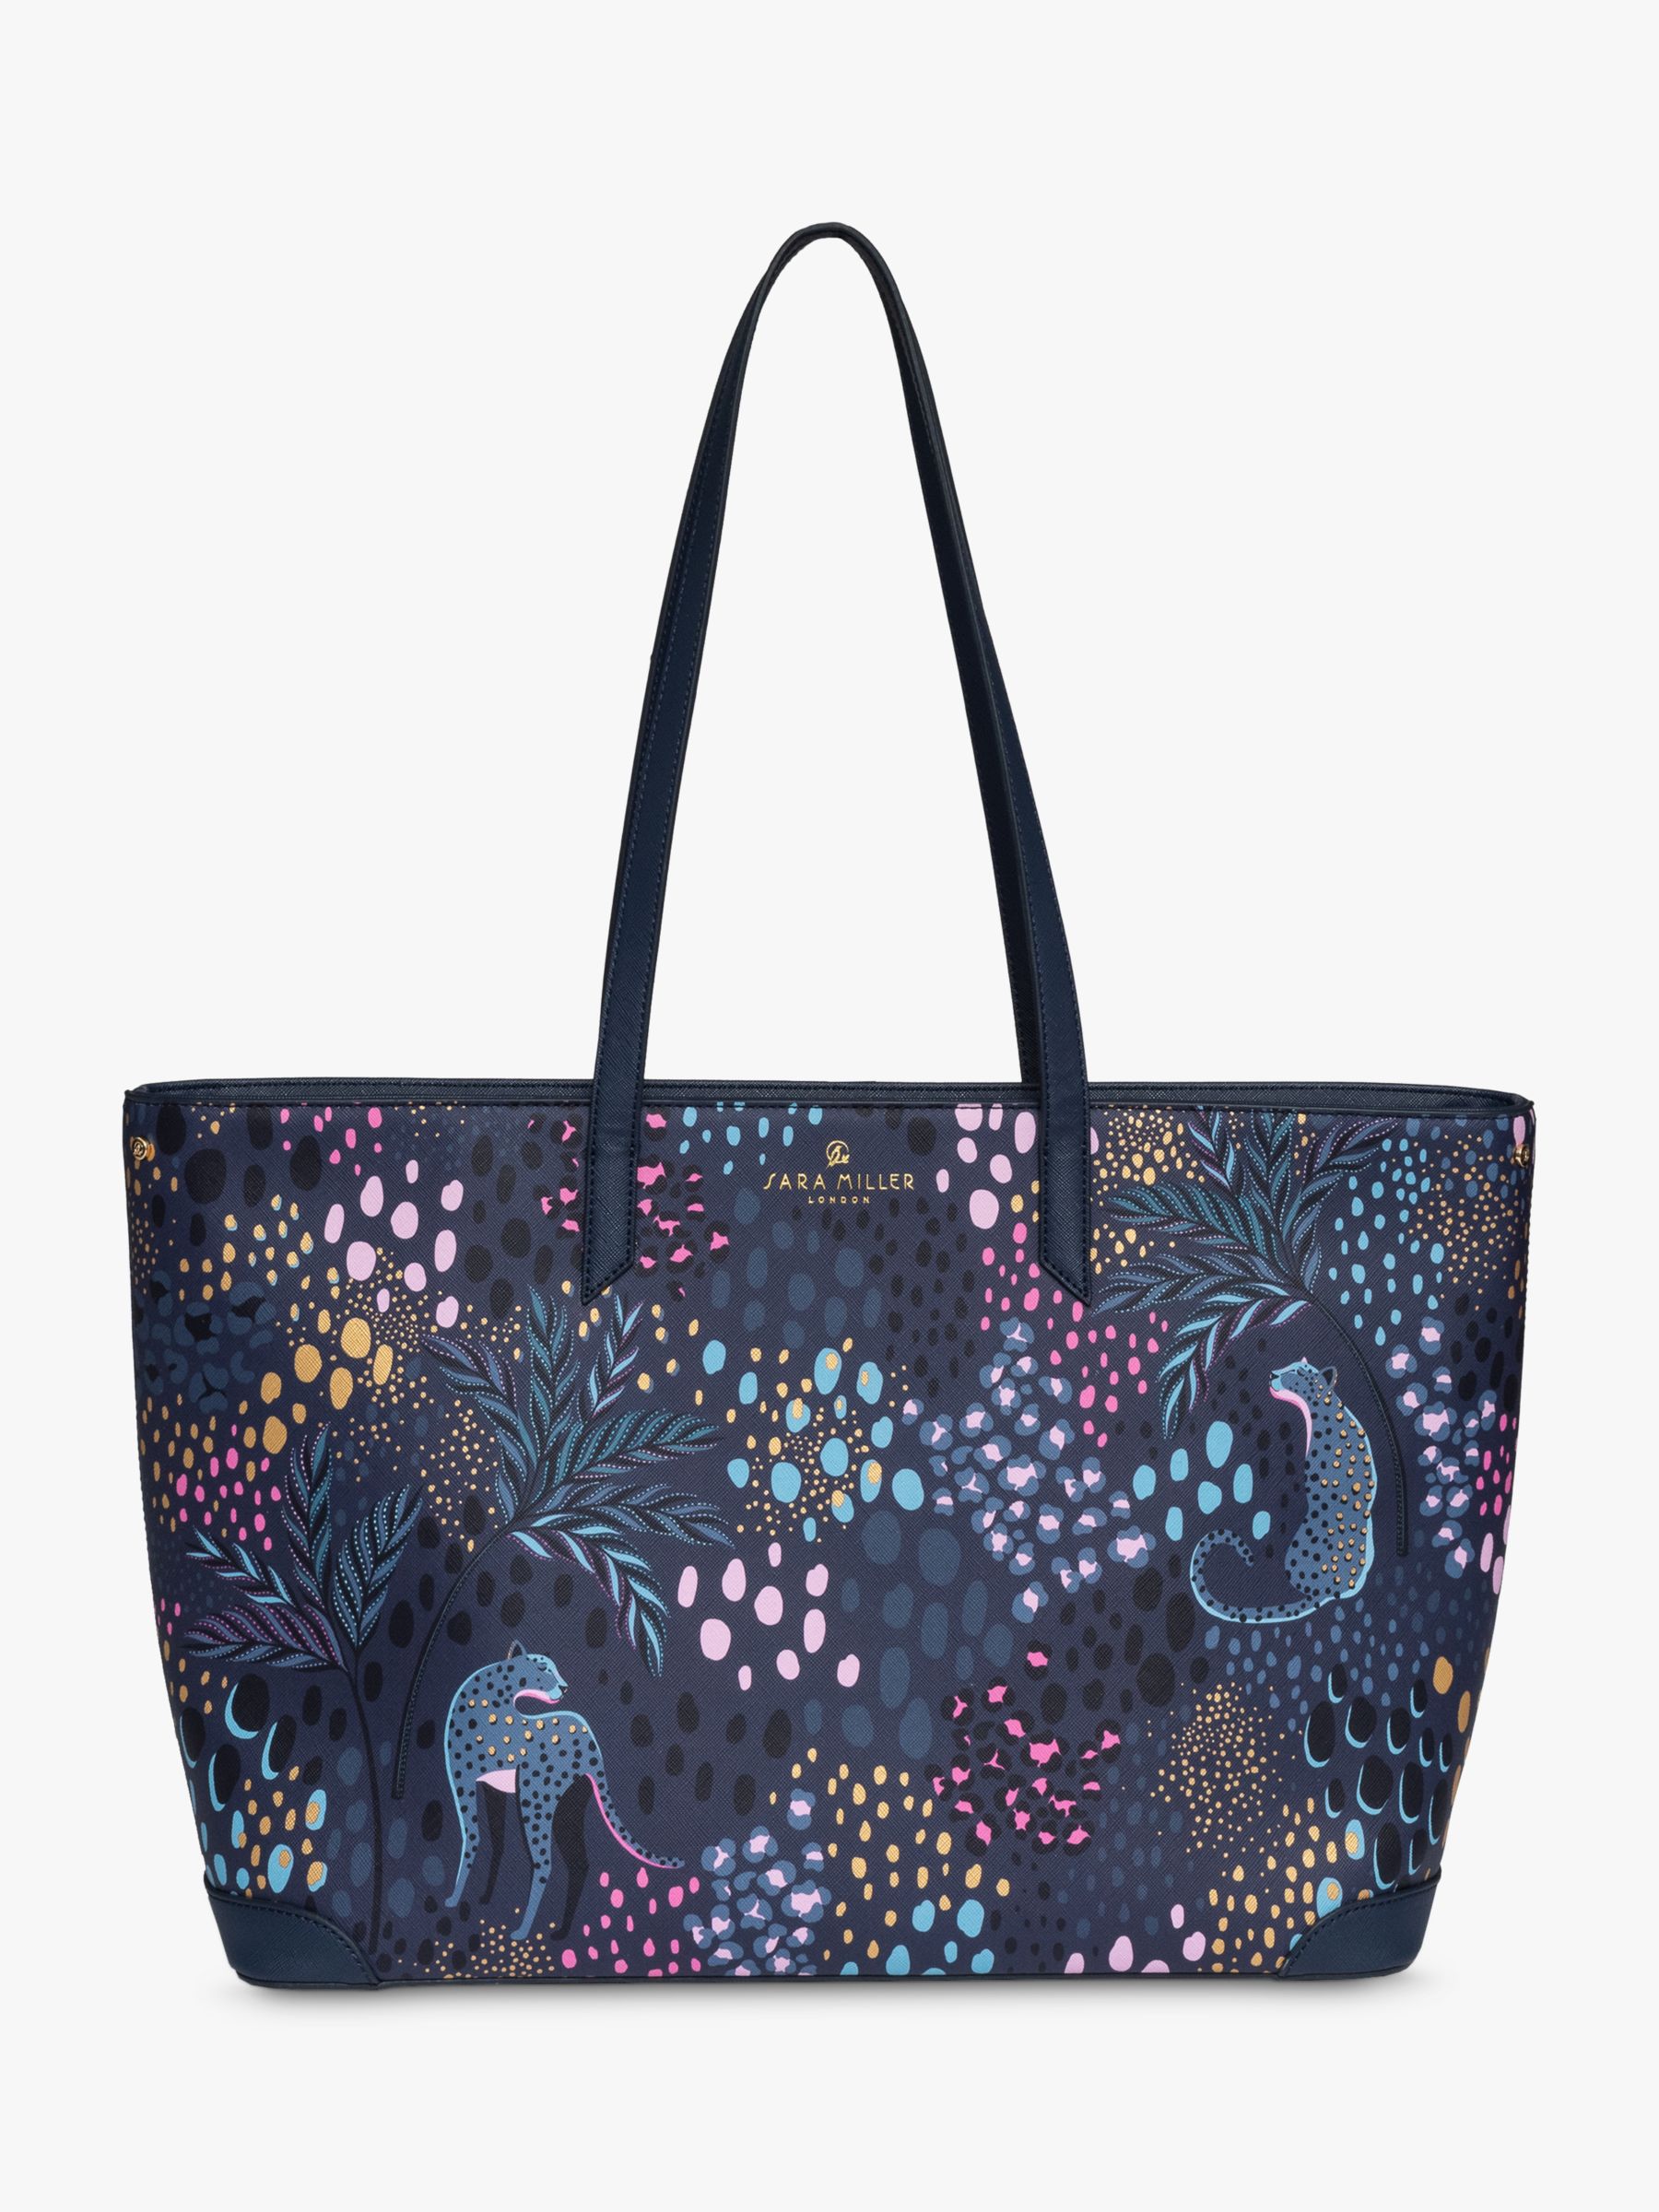 Accessories Large Tote Bag , Floral - Women's Bags - Victoria's Secret Beauty